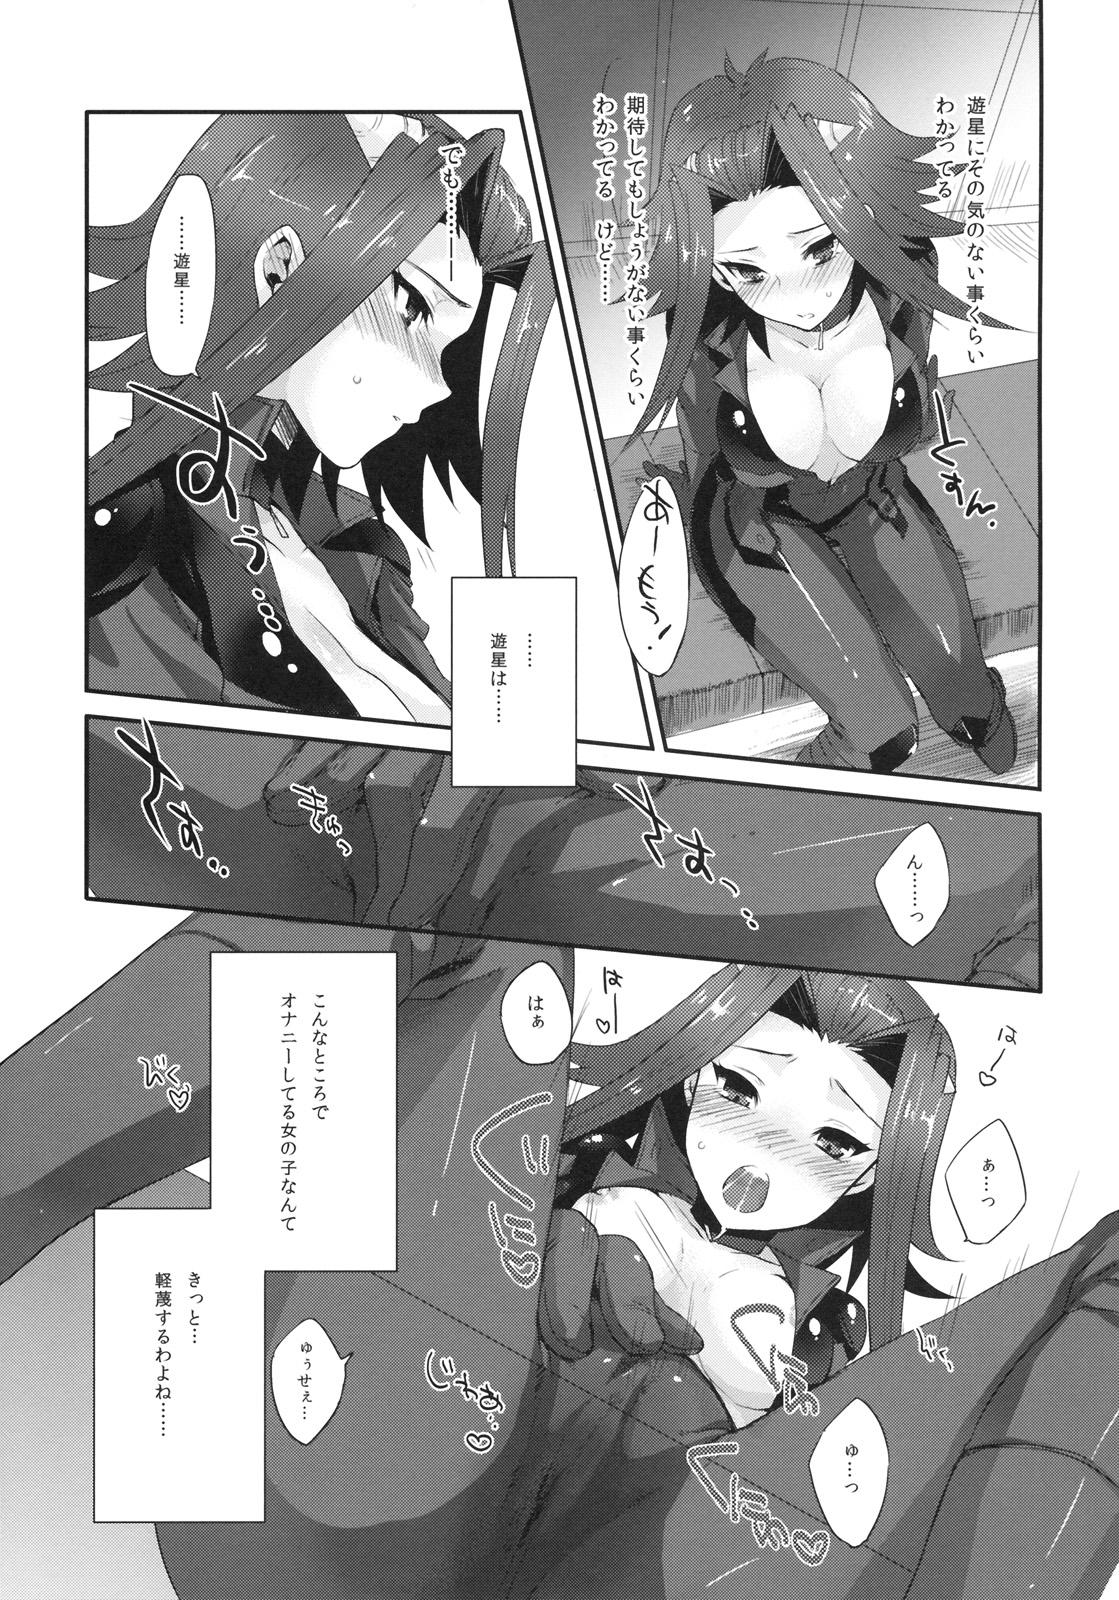 Strange Izayoi Emotion - Yu-gi-oh 5ds Leaked - Page 4